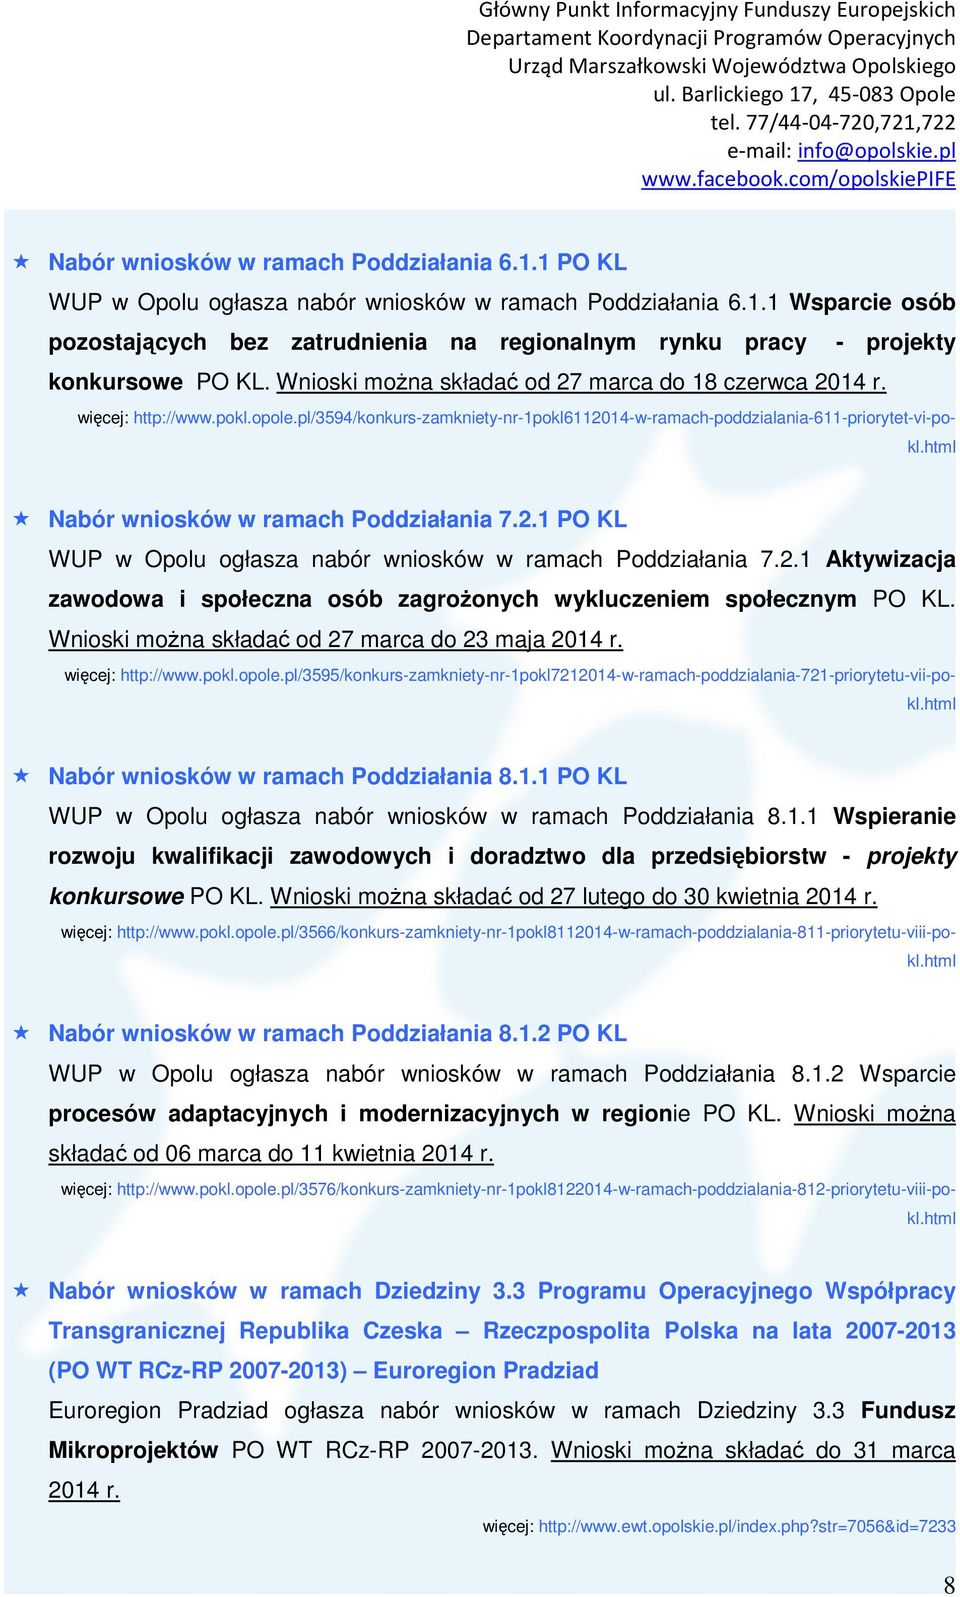 html Nabór wniosków w ramach Poddziałania 7.2.1 PO KL WUP w Opolu ogłasza nabór wniosków w ramach Poddziałania 7.2.1 Aktywizacja zawodowa i społeczna osób zagroŝonych wykluczeniem społecznym PO KL.